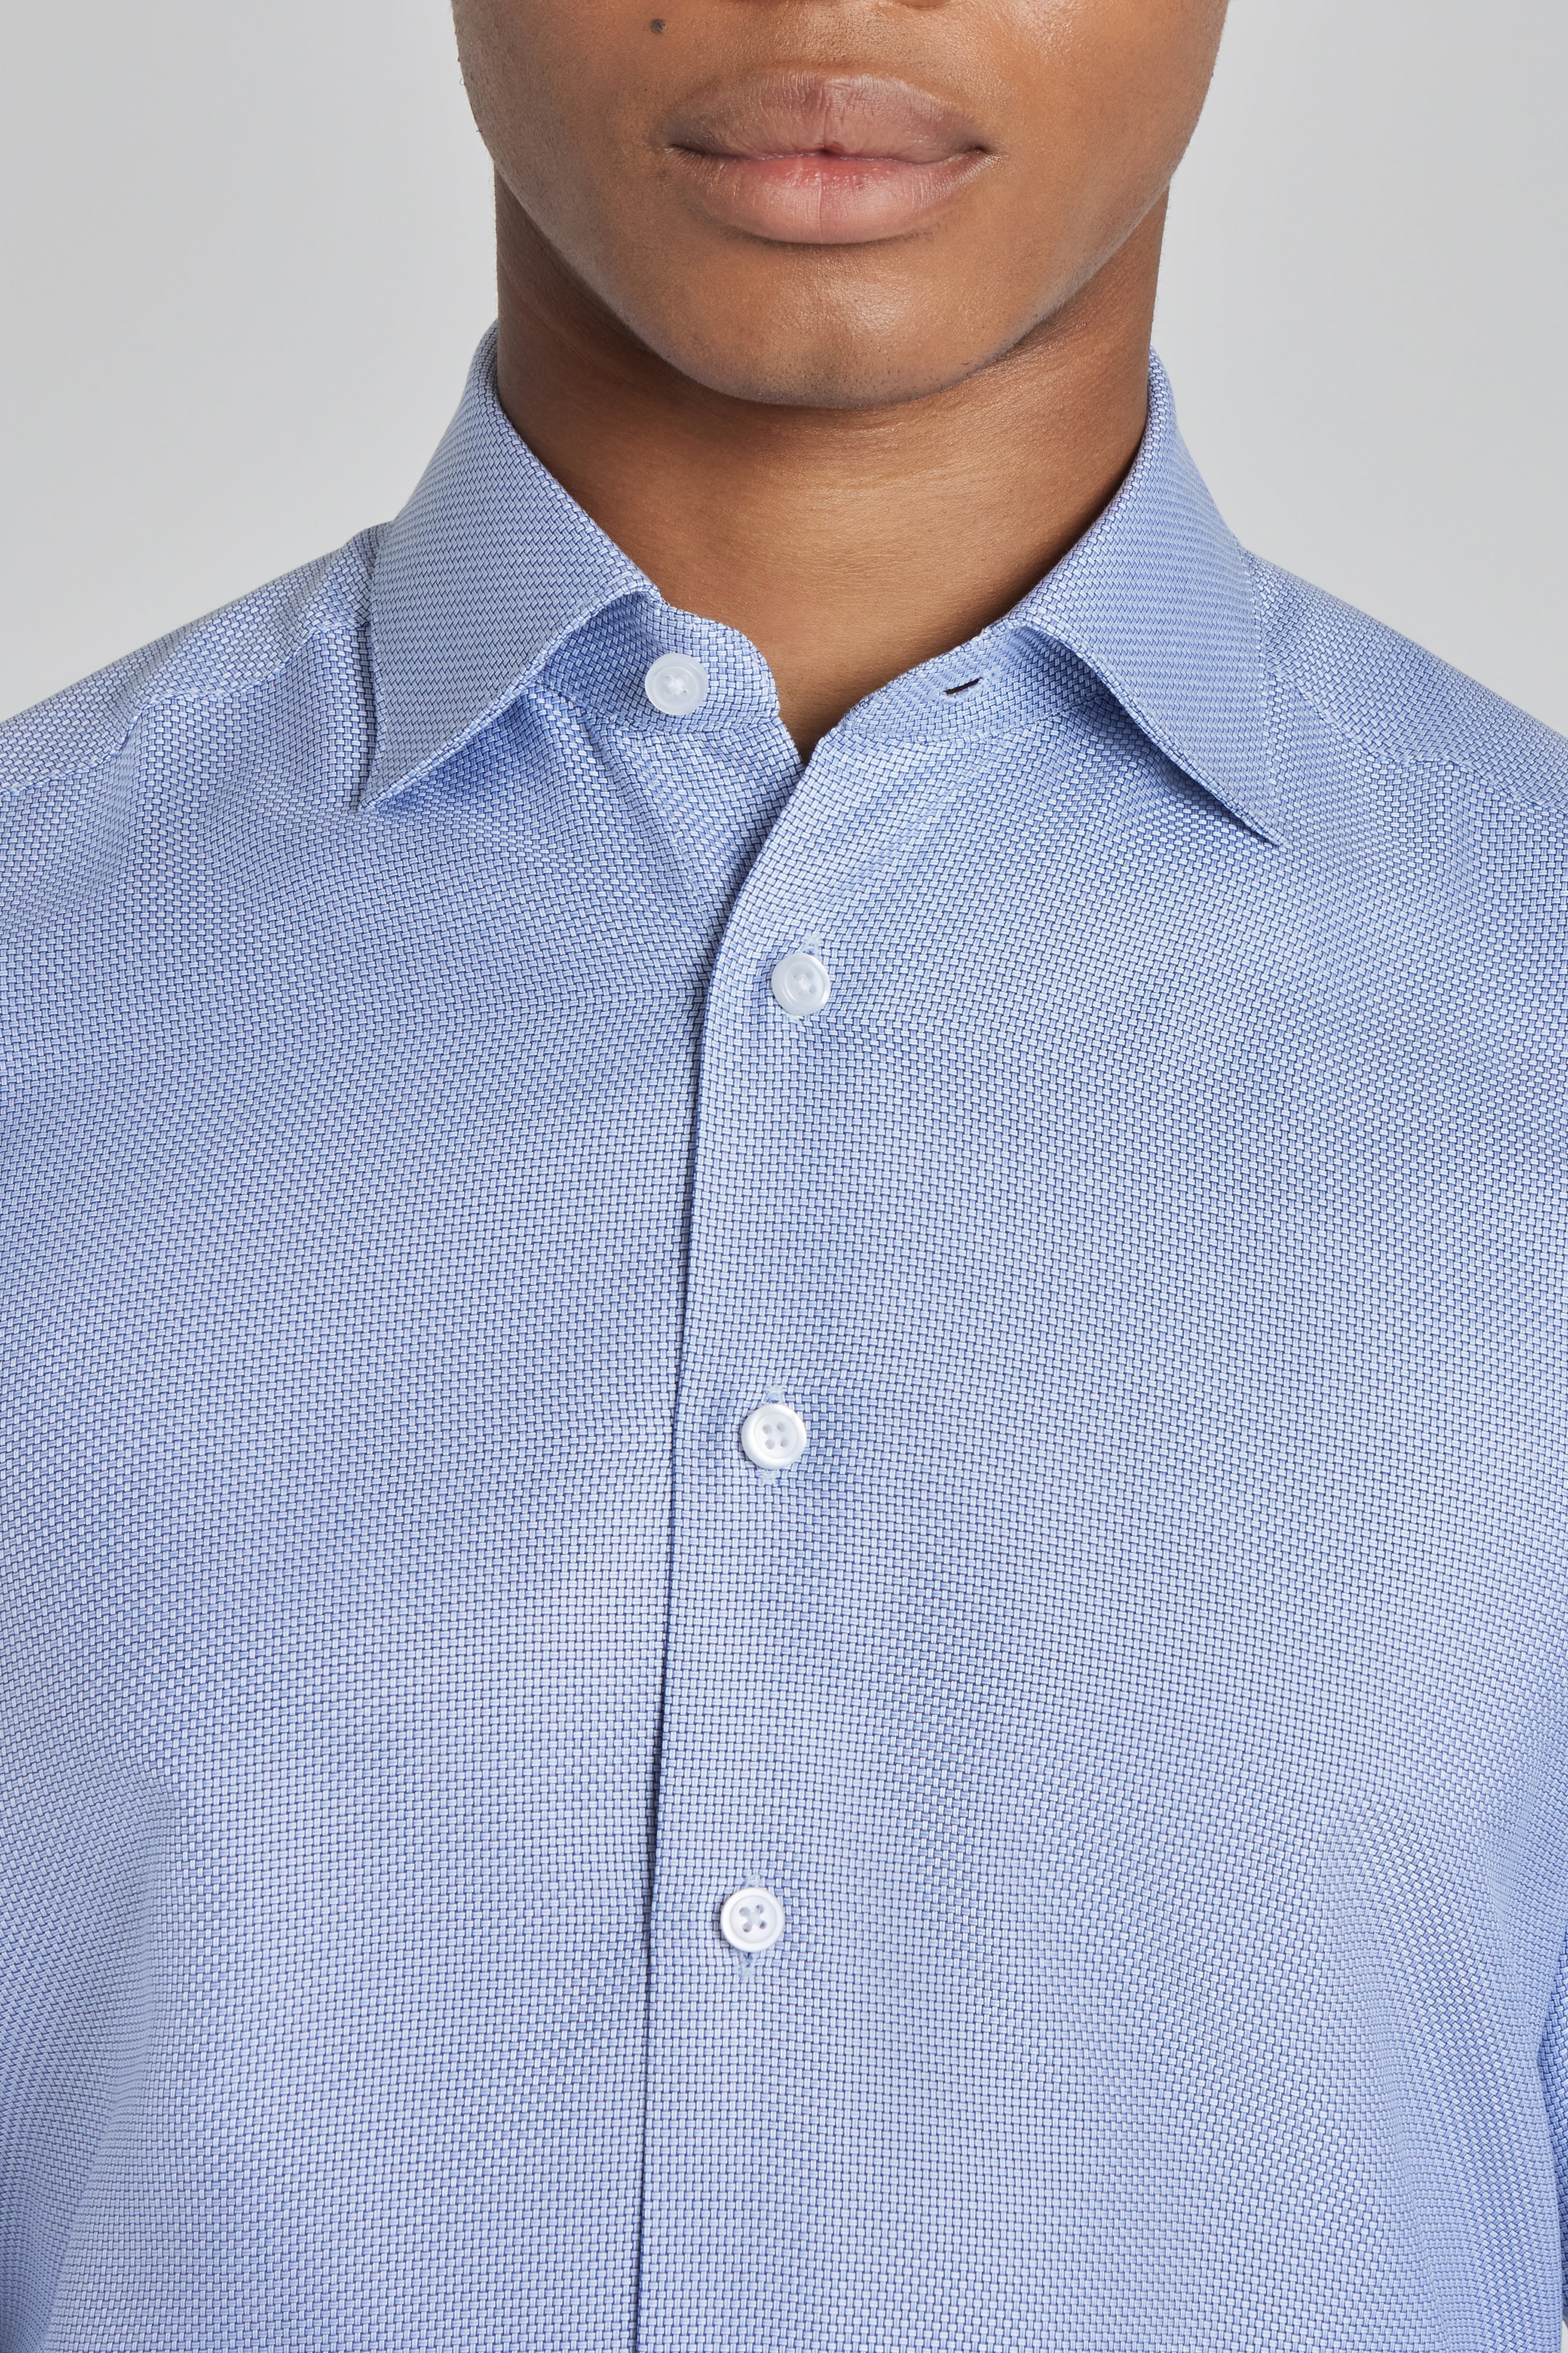 Parkman Sky Blue Geometric Weave Cotton Dress Shirt